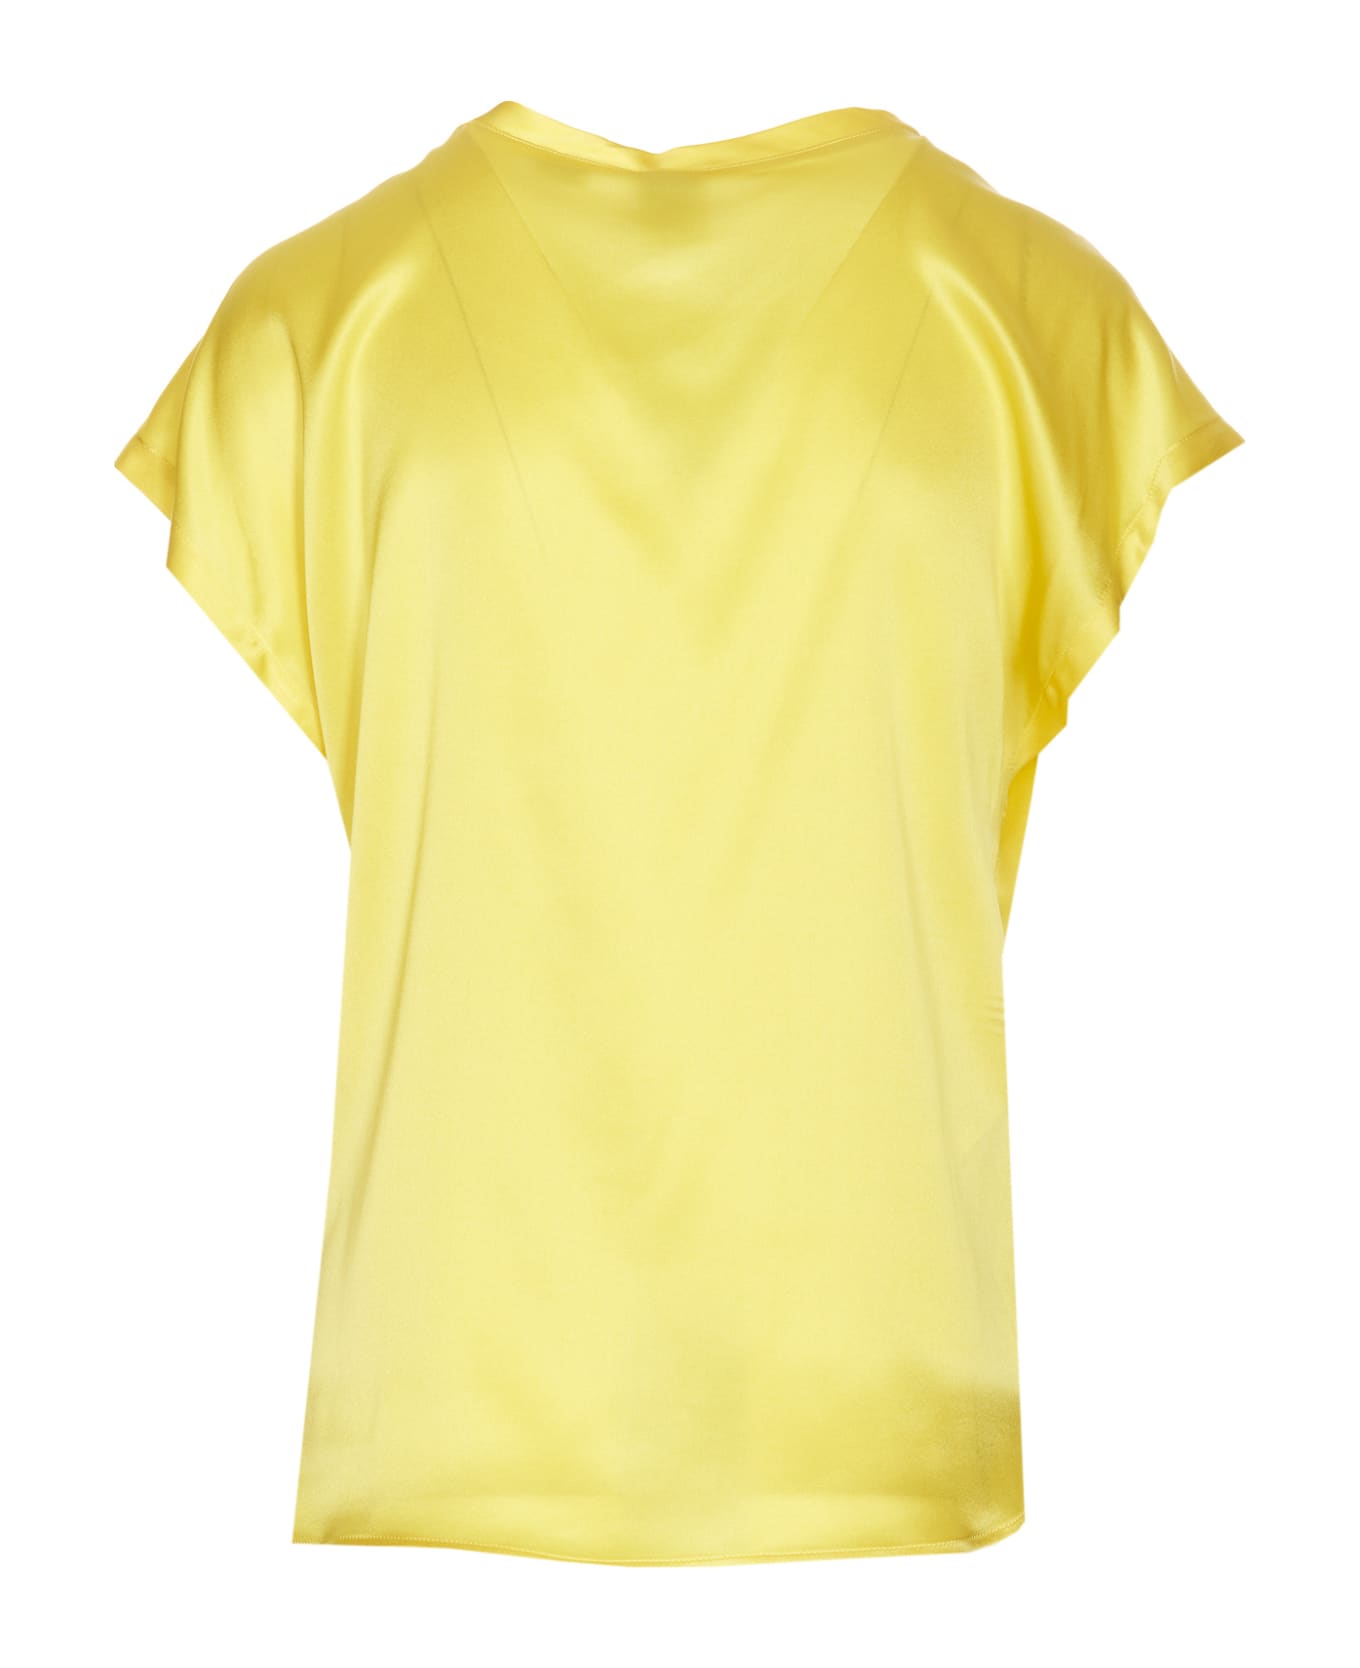 Pinko Satin Mesh - Yellow Tシャツ